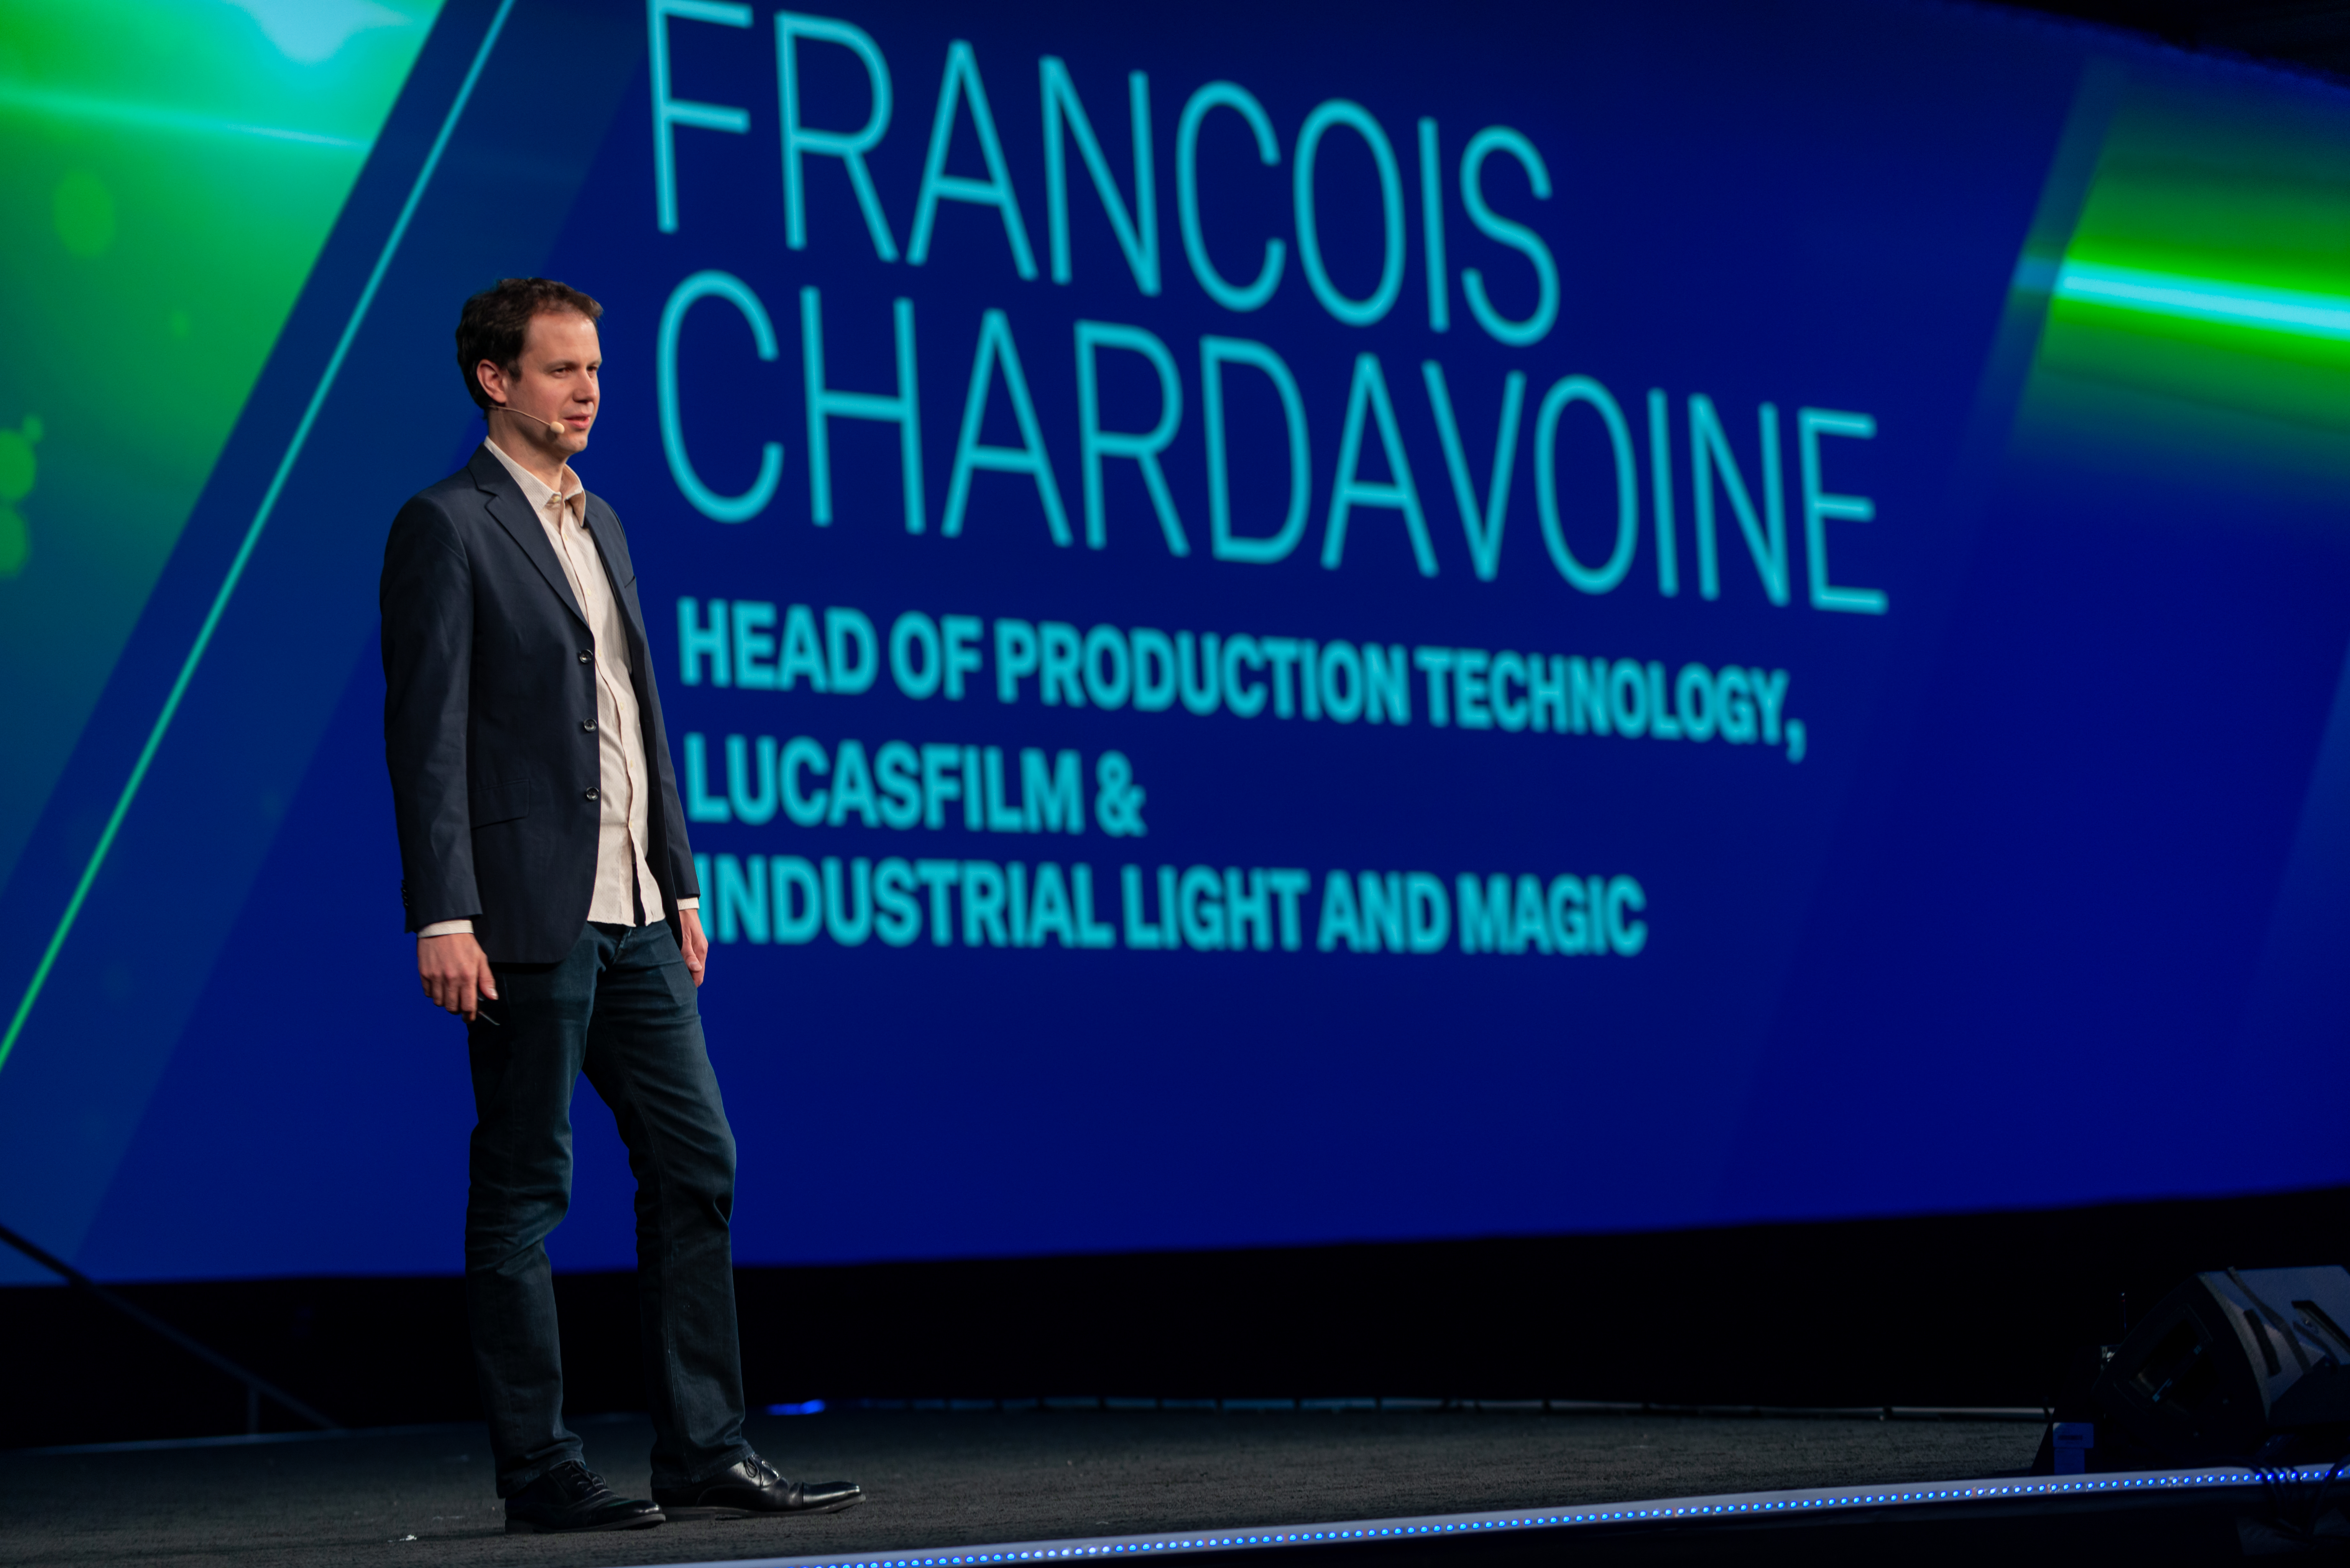           Francois Chardavoine fa una presentazione alla HxGN Live 2019 a Las Vegas